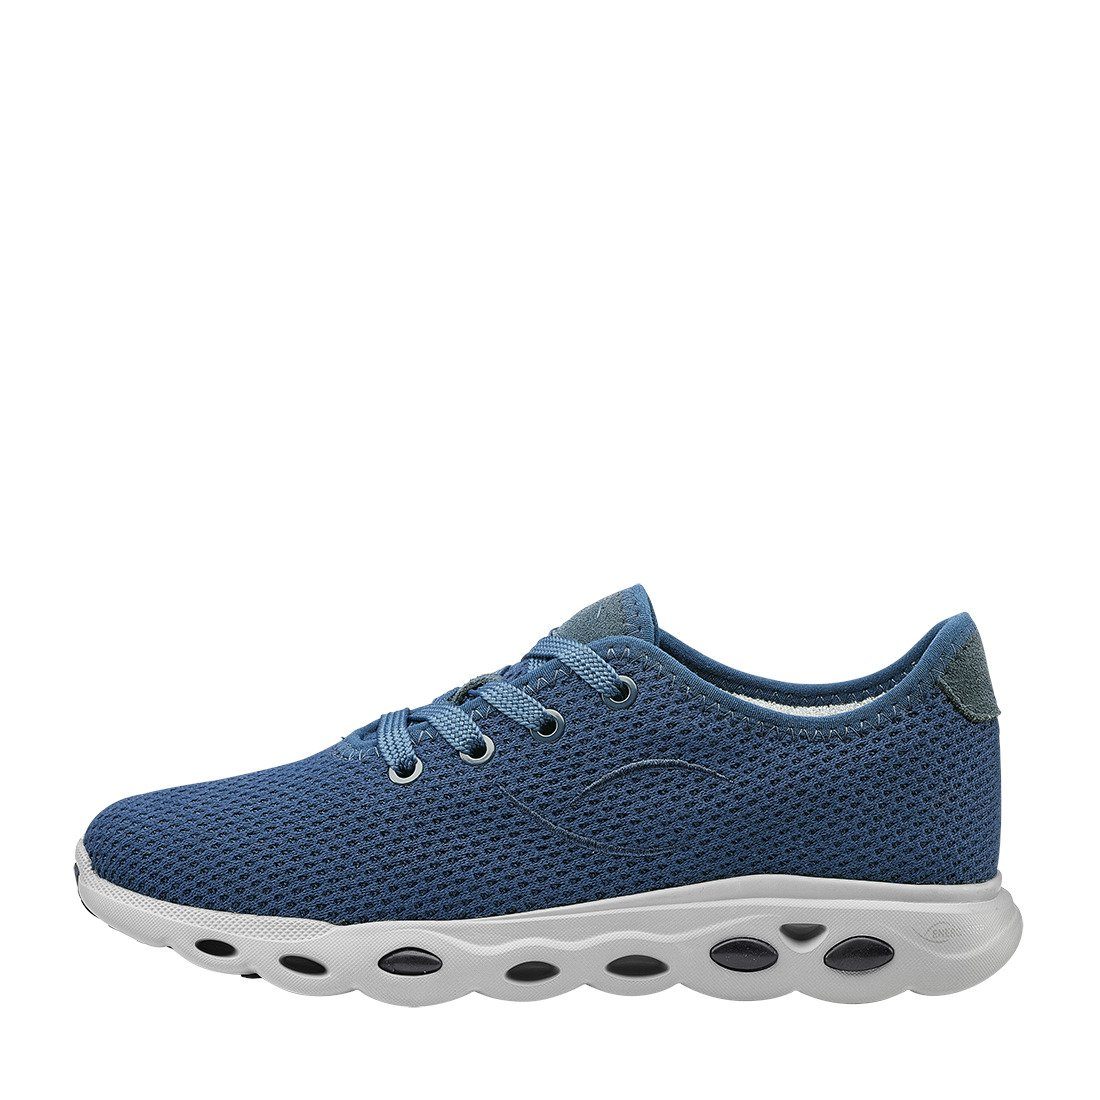 Ara Ara Schuhe, Sneaker Racer blau 043612 - Materialmix Sneaker Damen